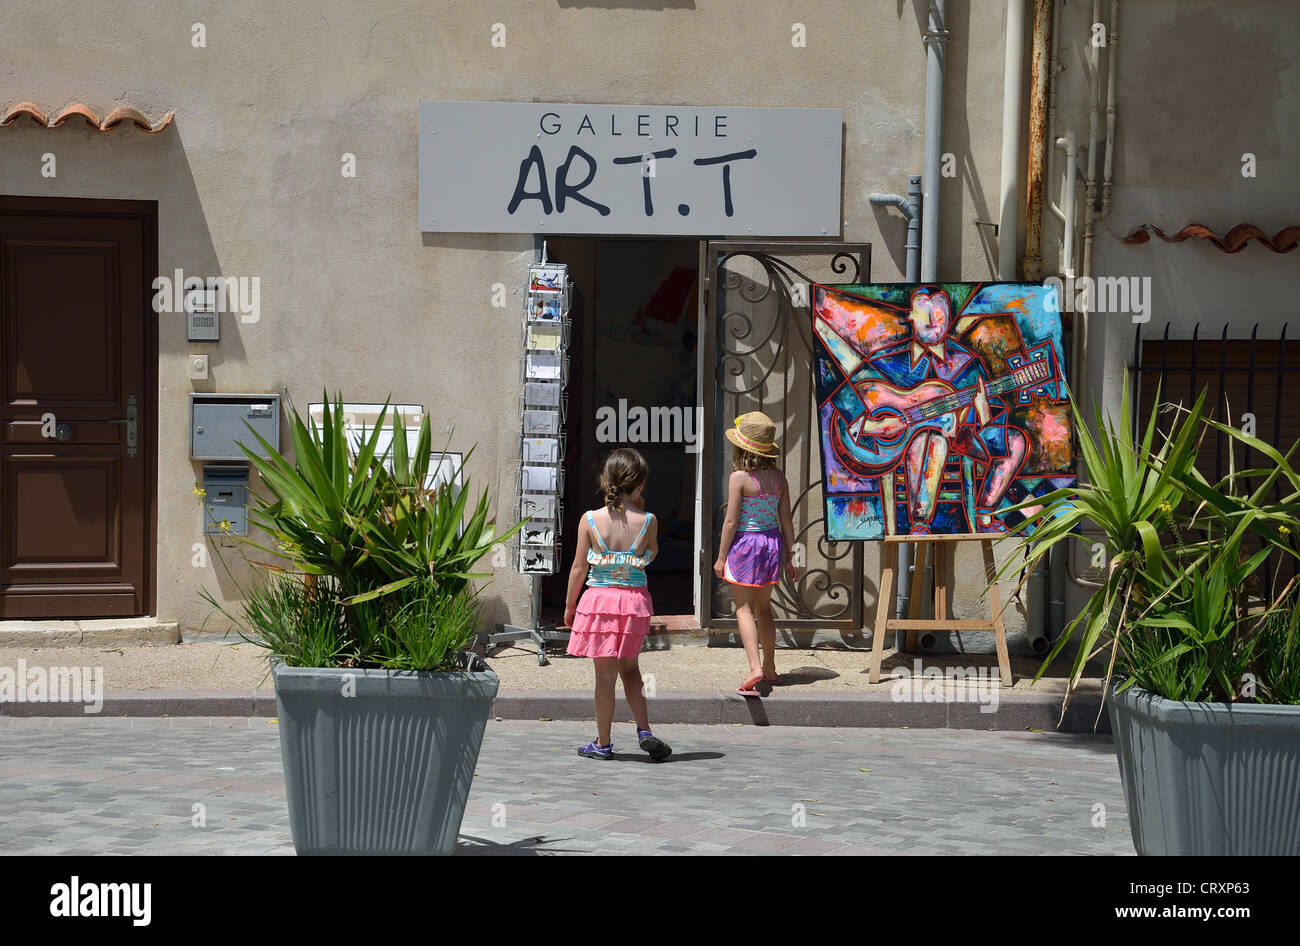 Art.T Galerie, Place Mariejol, Antibes, Côte d'Azur, Alpes-Maritimes,  Provence-Alpes-Côte d'Azur, France Stock Photo - Alamy